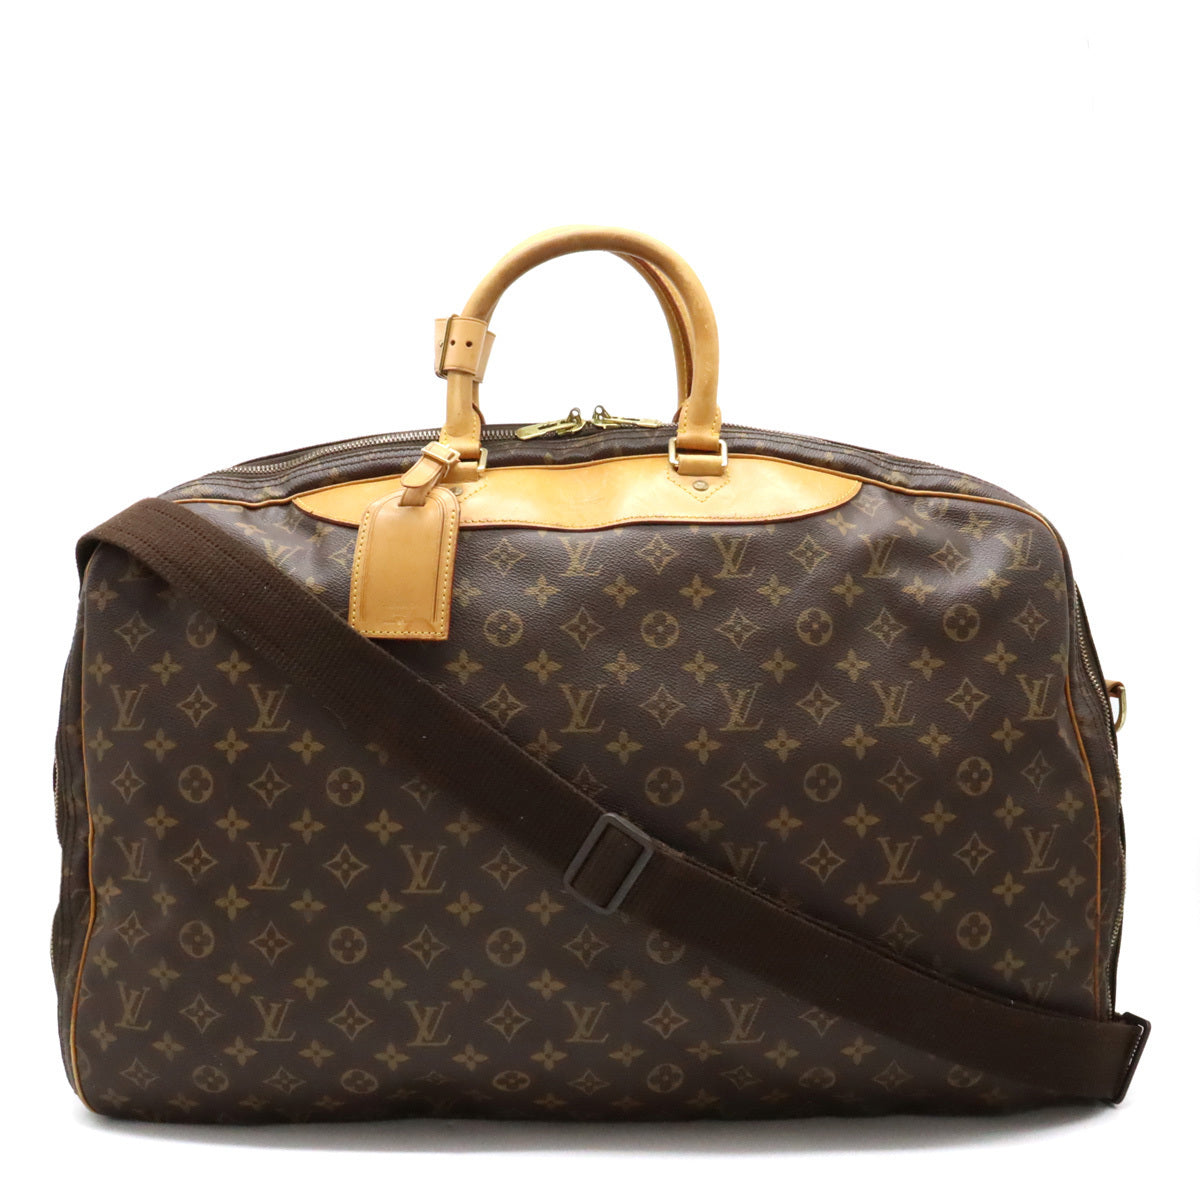 Louis Vuitton Alize de Poche 55 Boston Bag Travel Bag Vintage